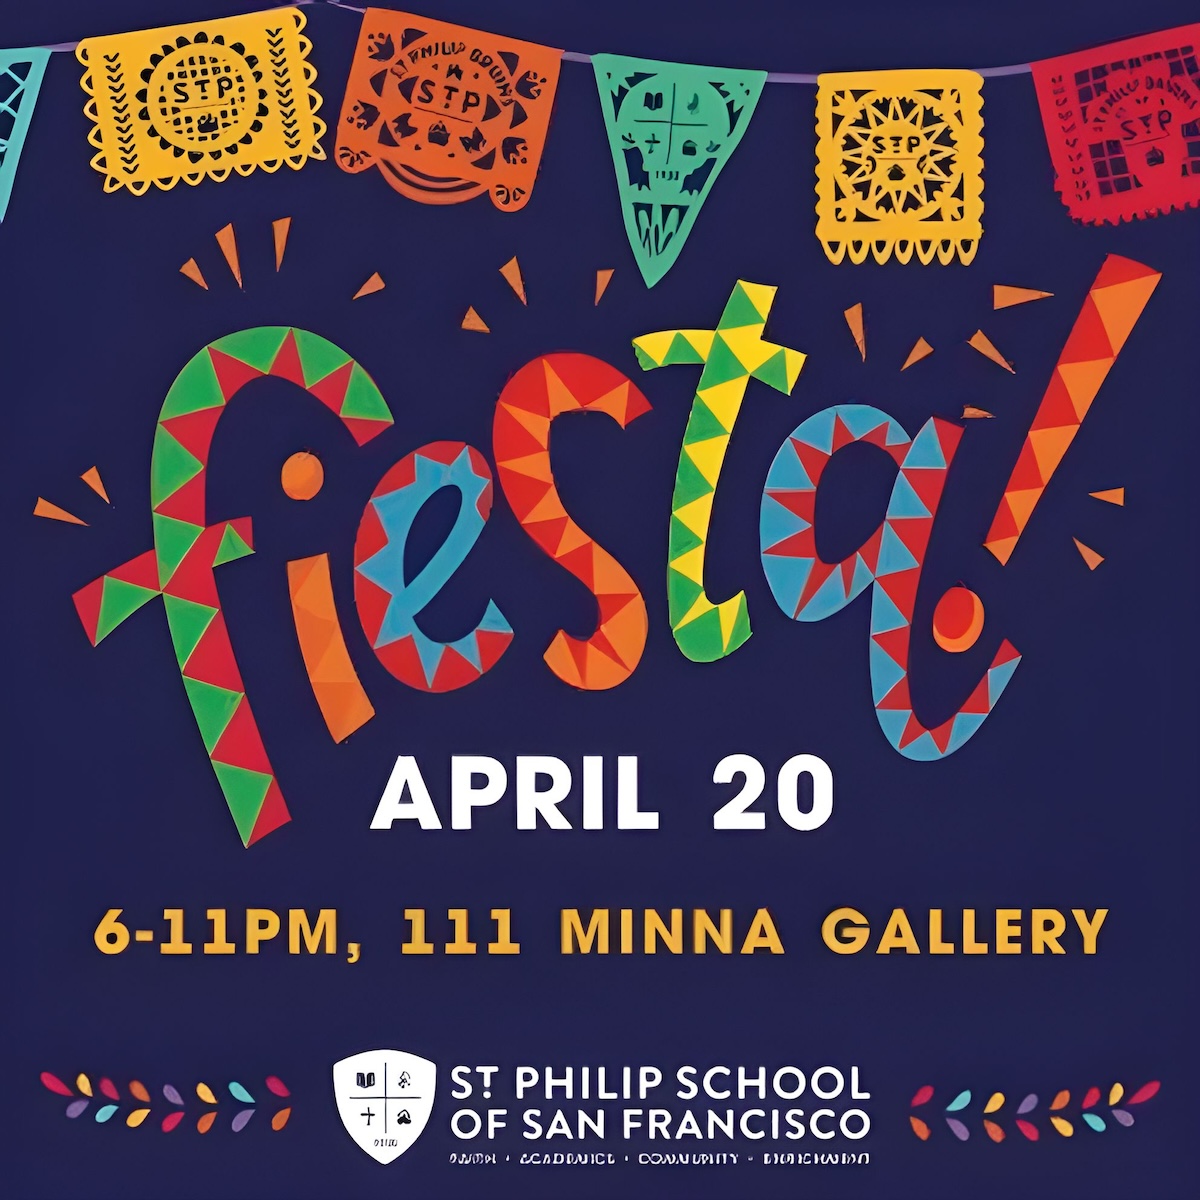 Fiesta at 111 Minna Gallery